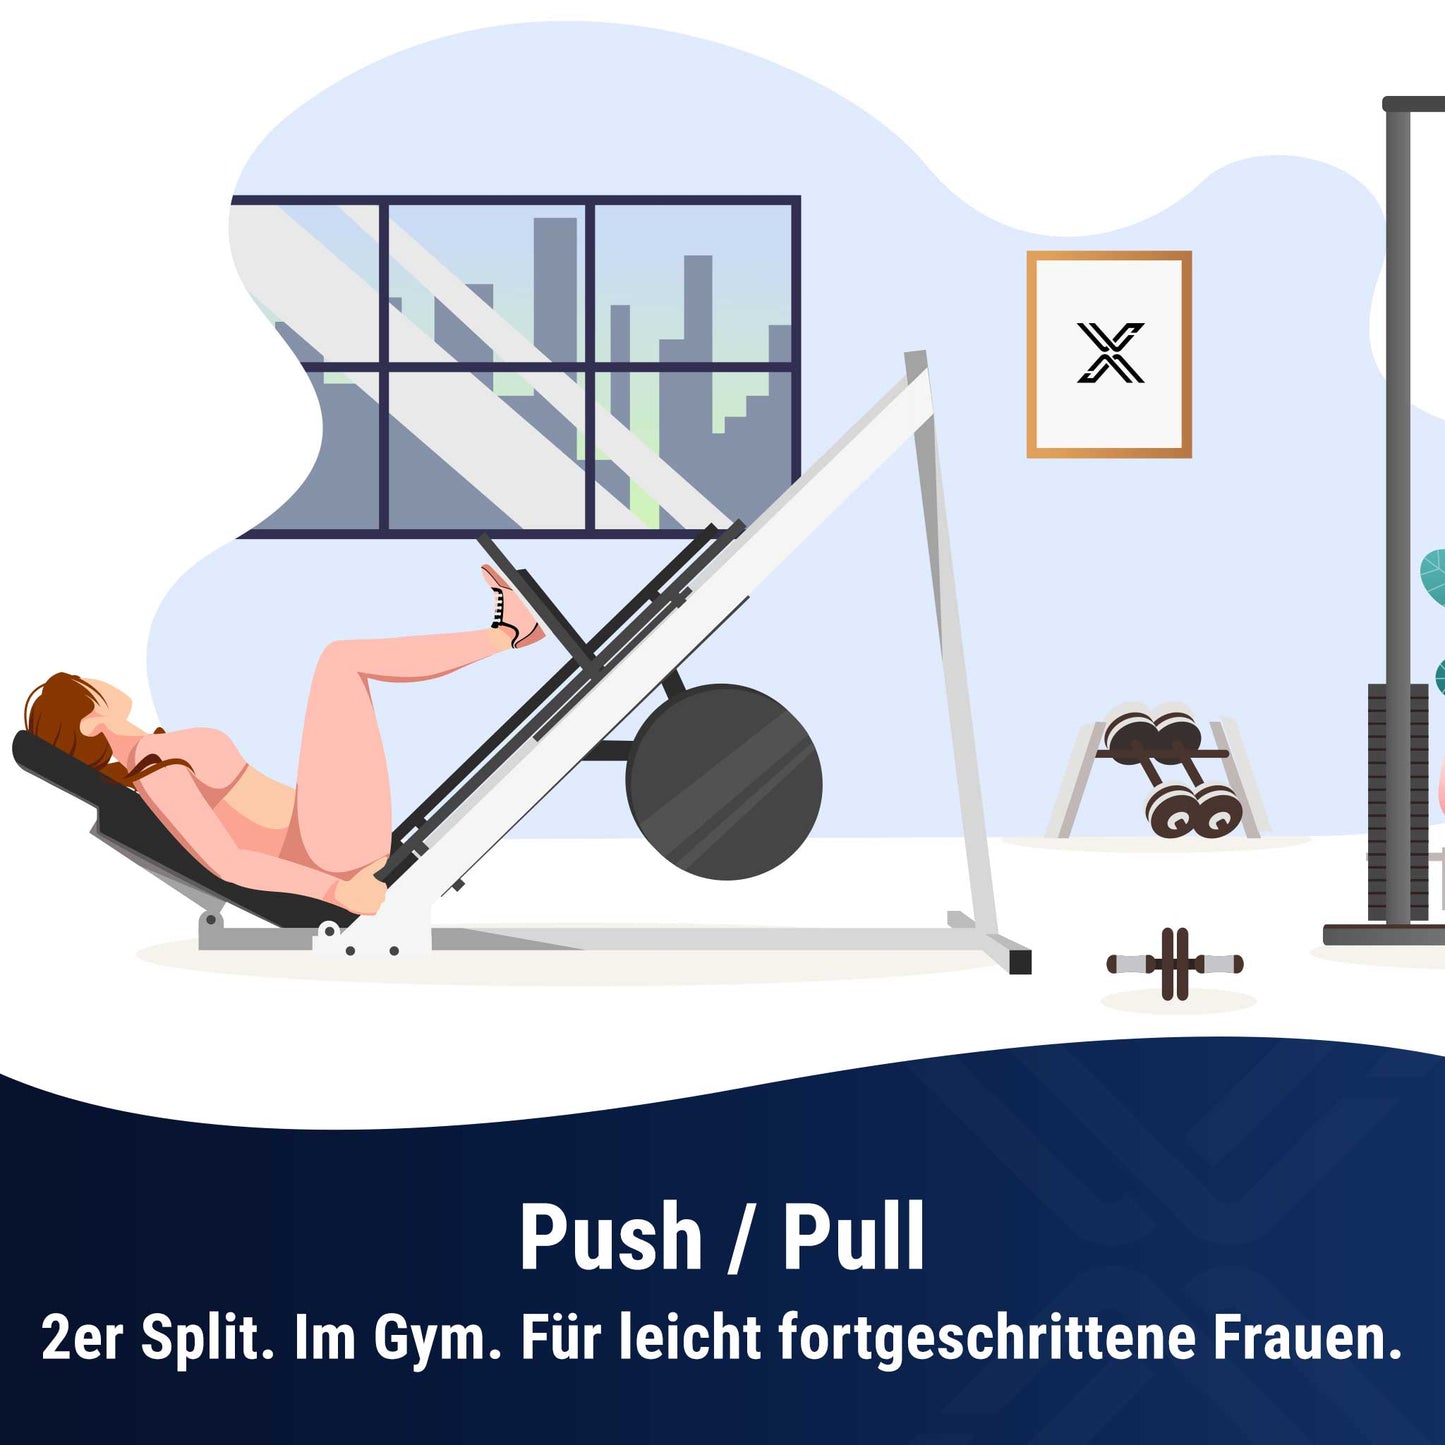 Push / Pull im Gym für leicht fortgeschrittene Frauen